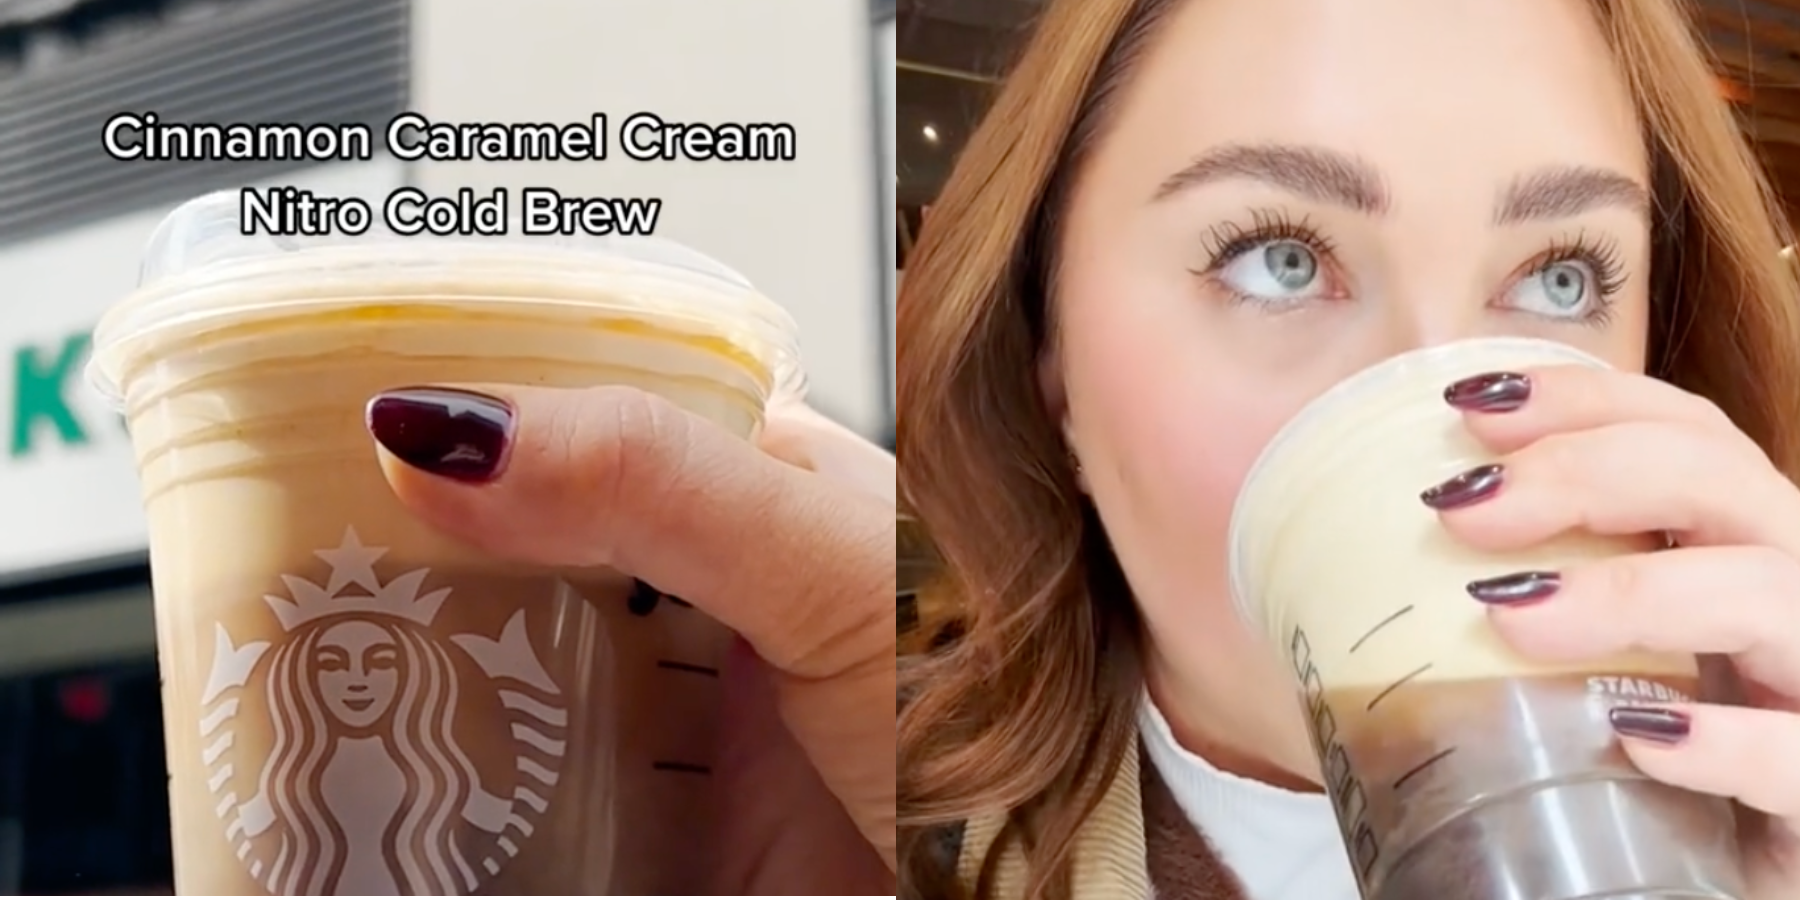 REVIEW: Starbucks Cinnamon Caramel Cream Nitro Cold Brew - The